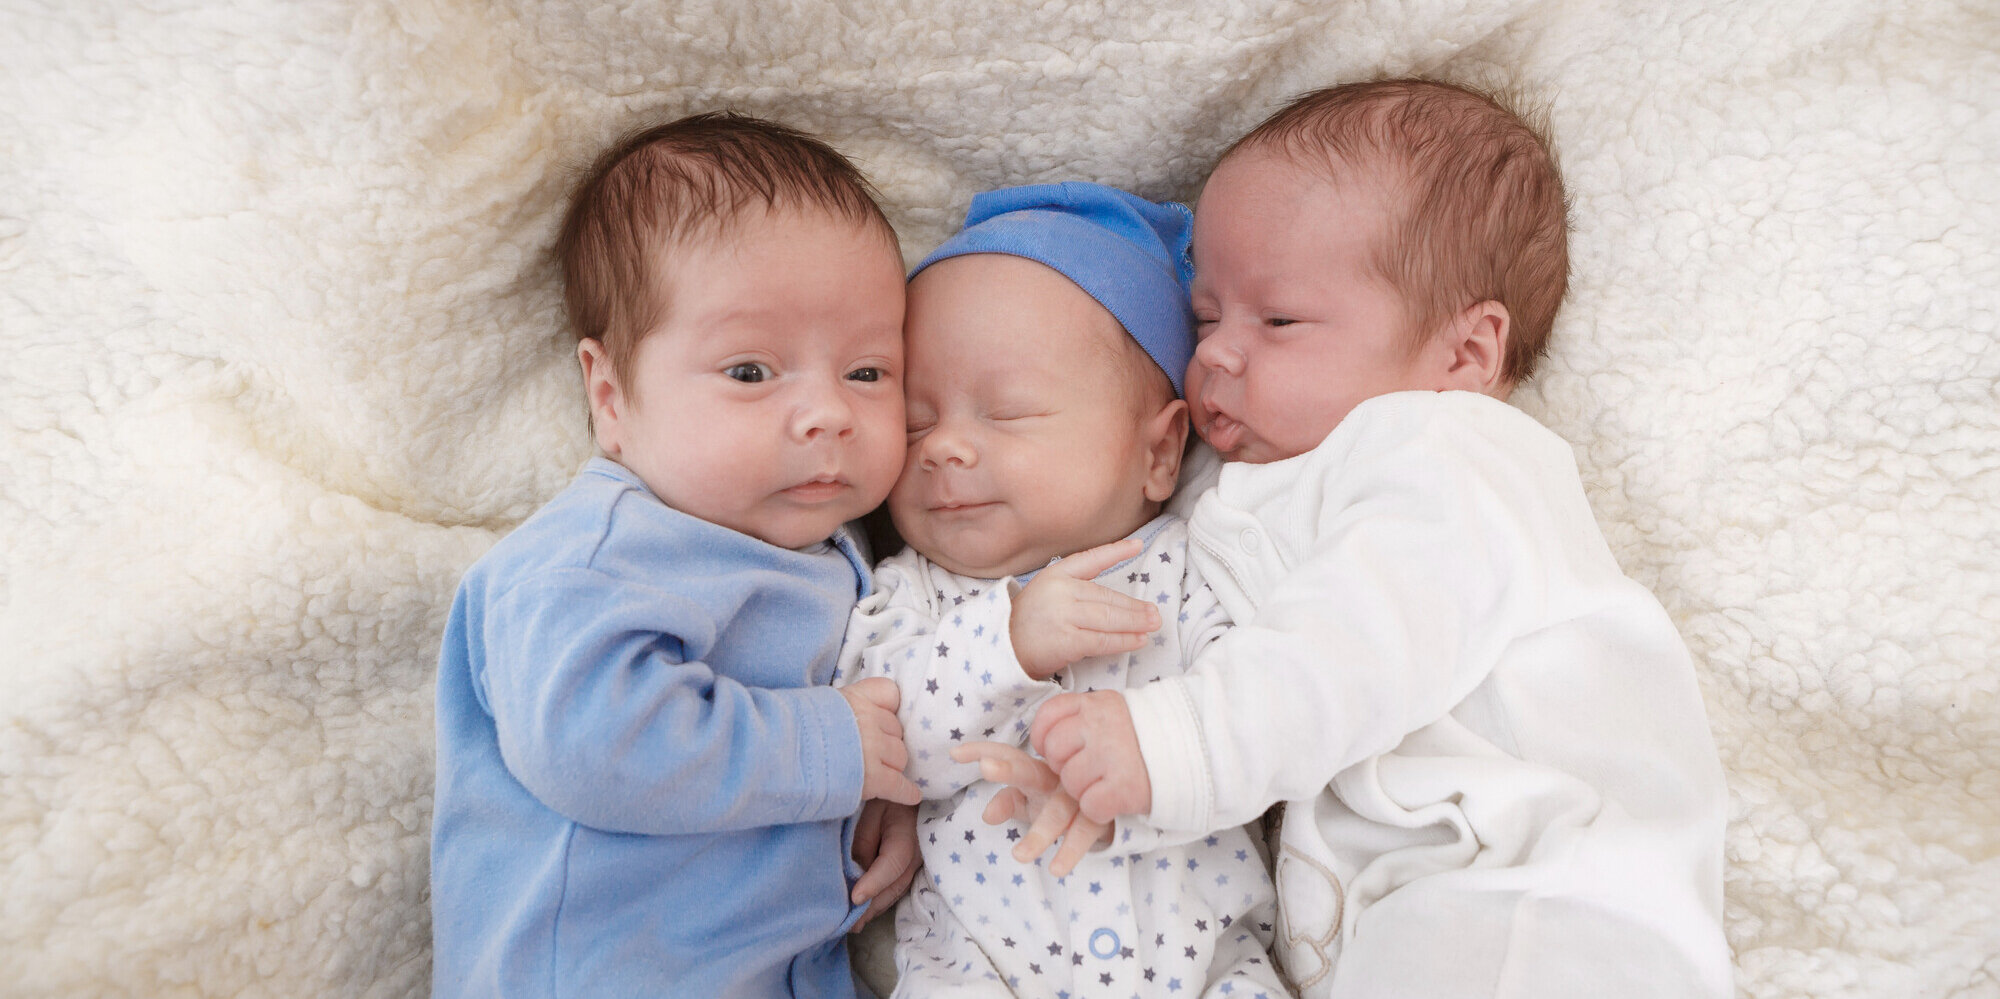 Drei neugeborene Babies liegen auf einer Decke.